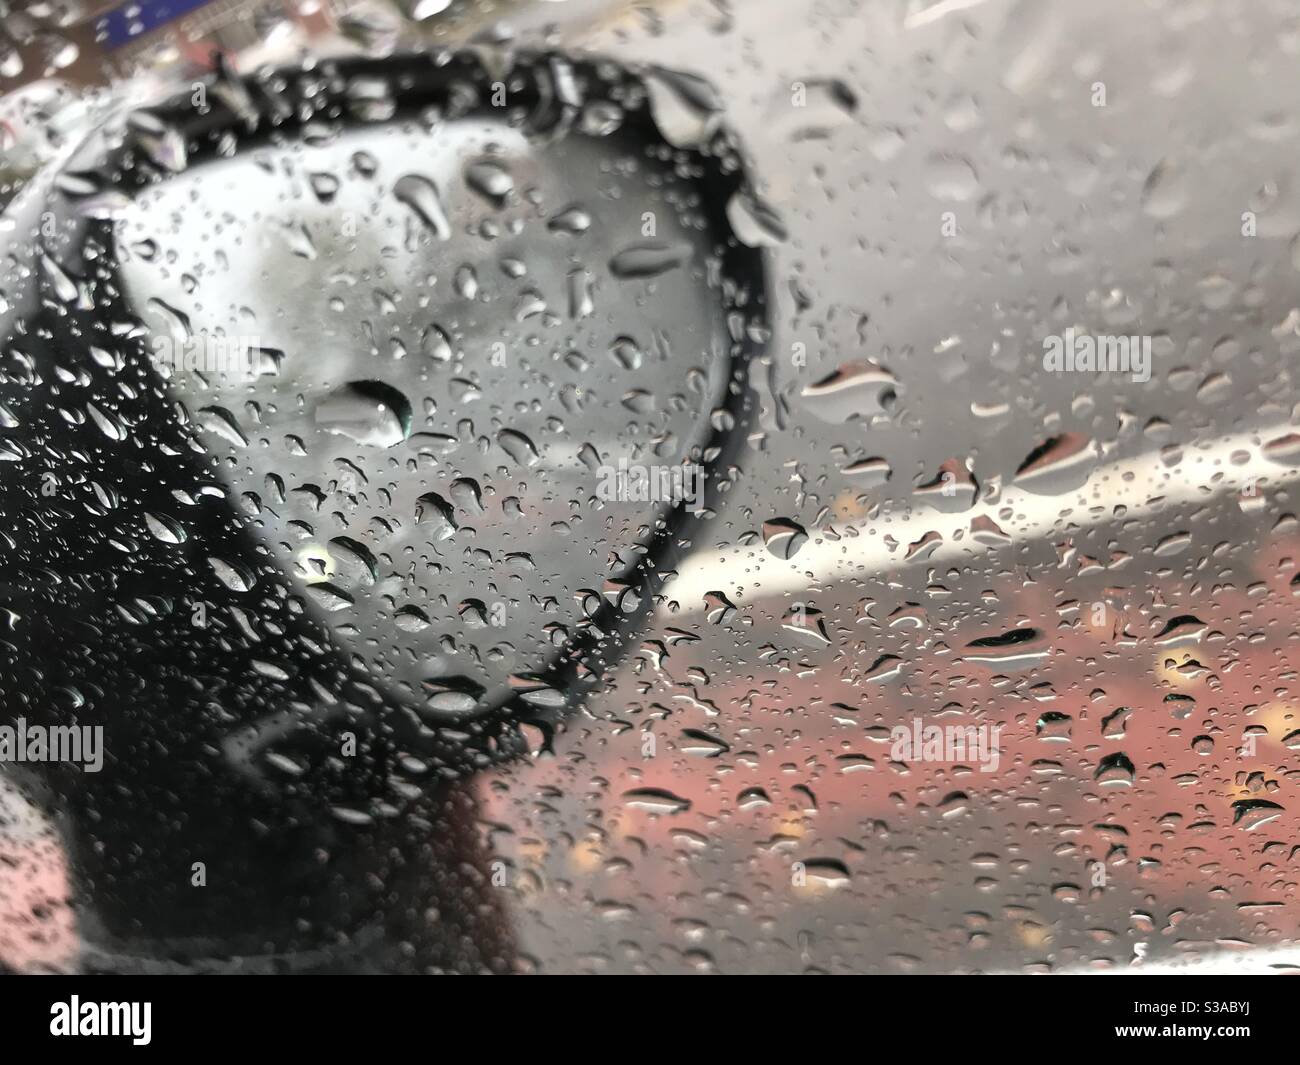 Auto Seitenspiegel mit Regen Tropfen Stockfotografie - Alamy